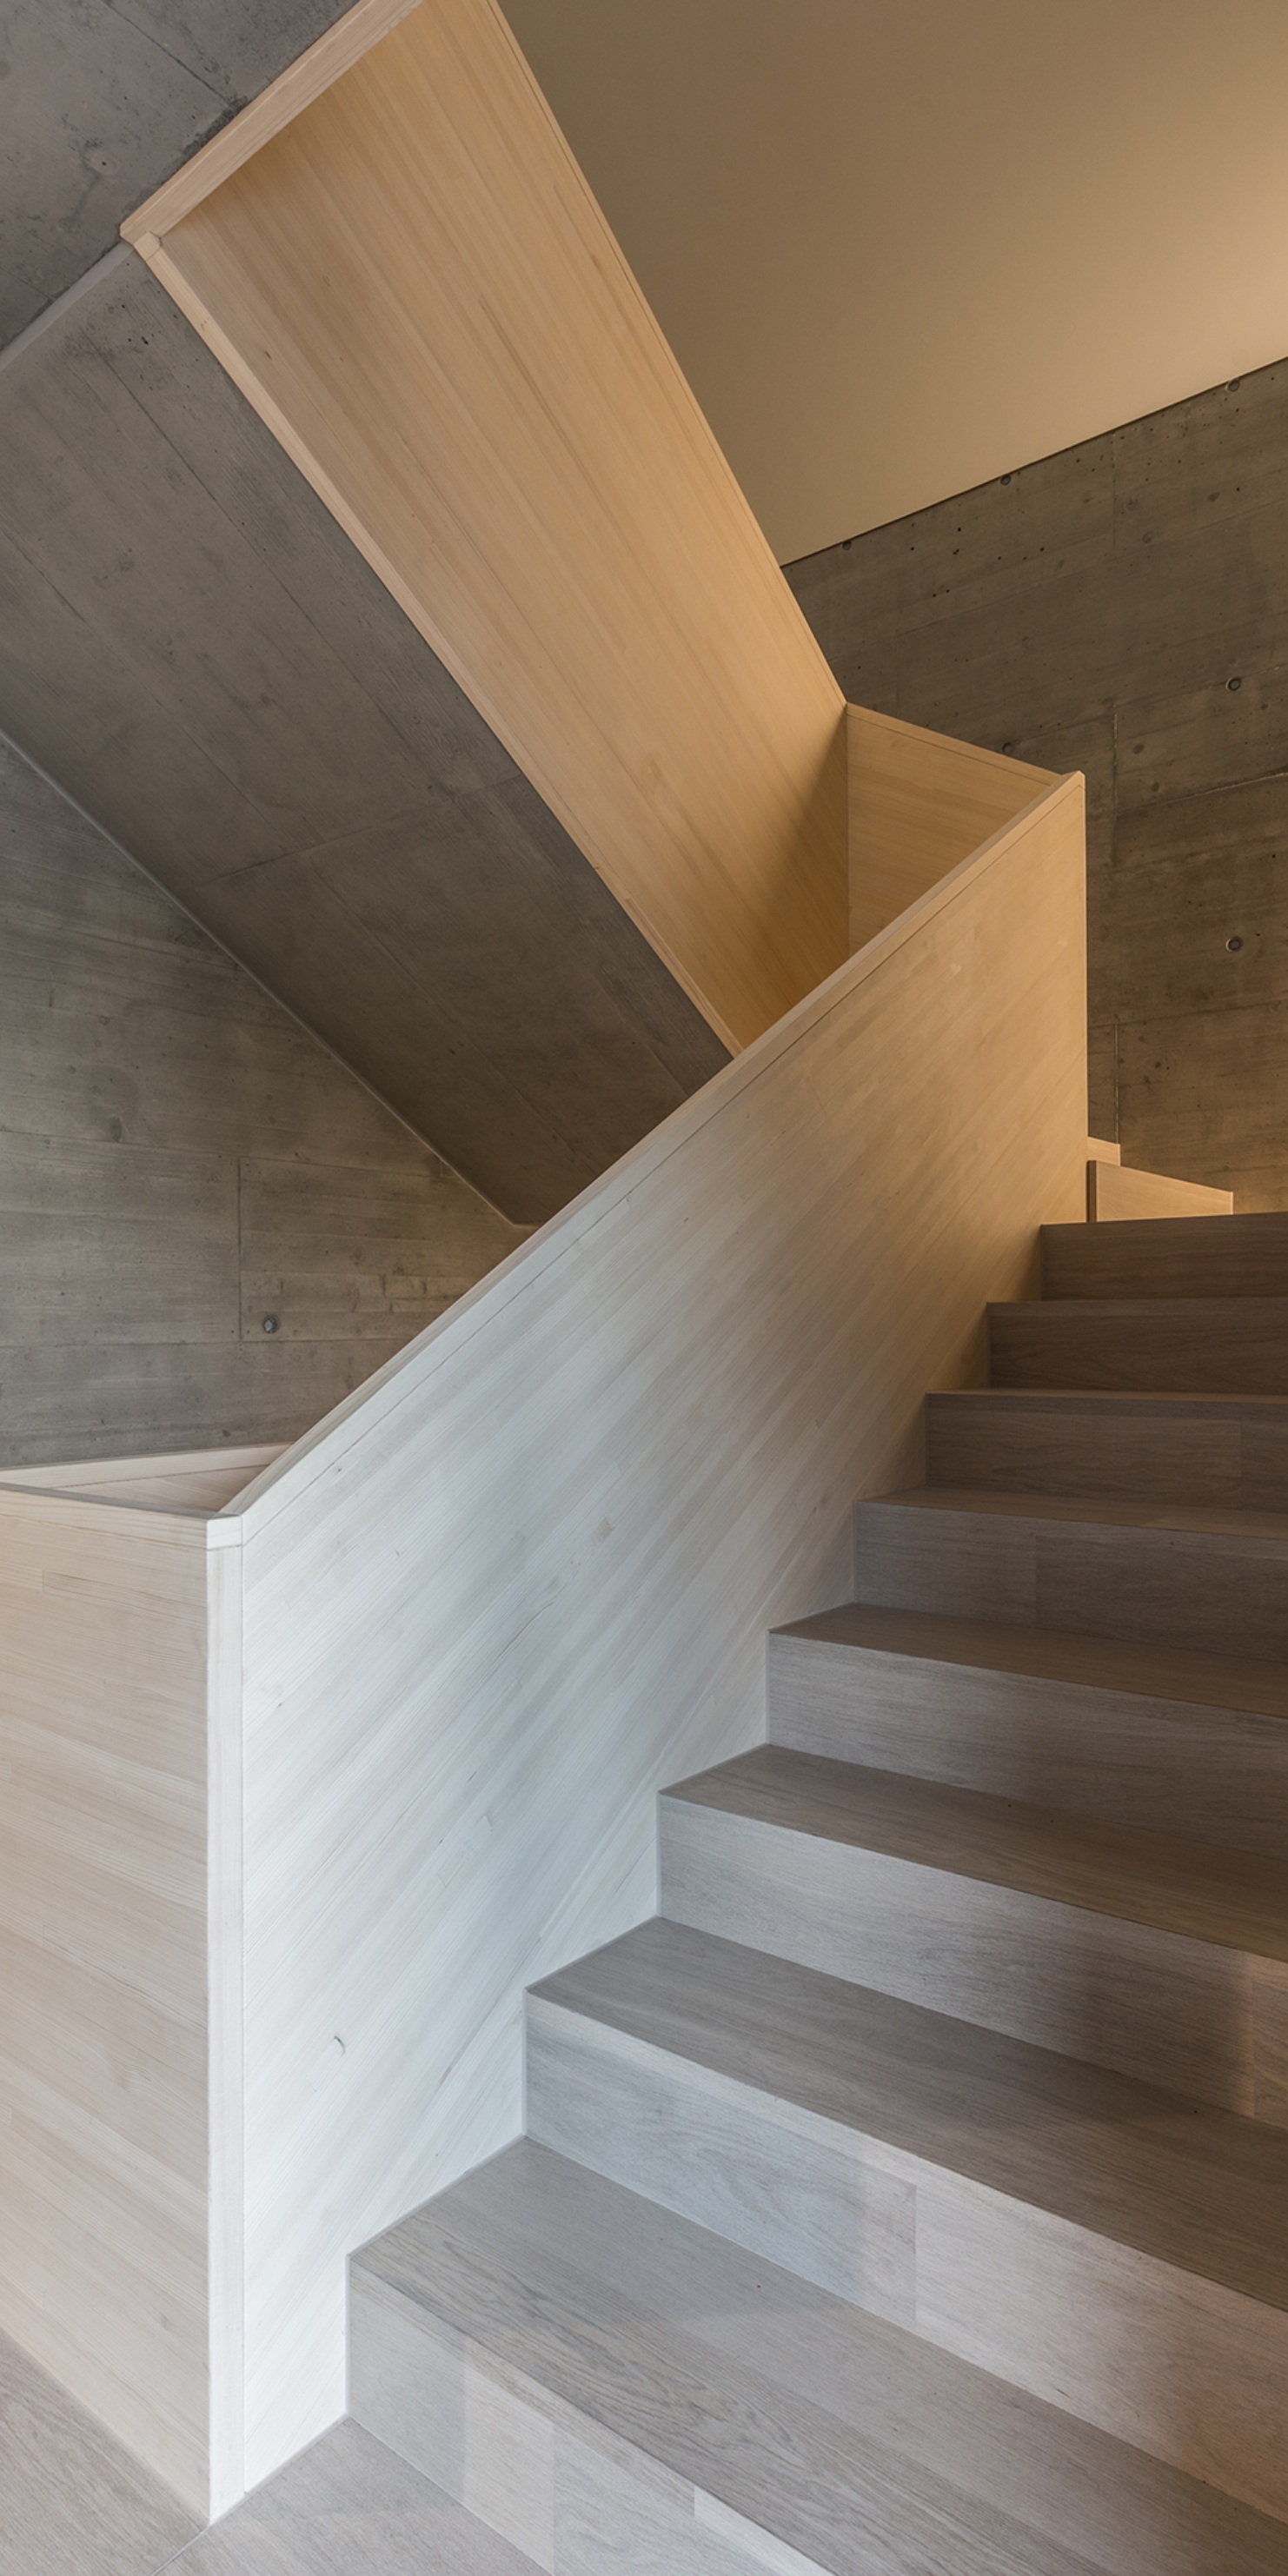 En association avec le béton, une cage d’escalier aux lignes simples et élégantes a été créée.